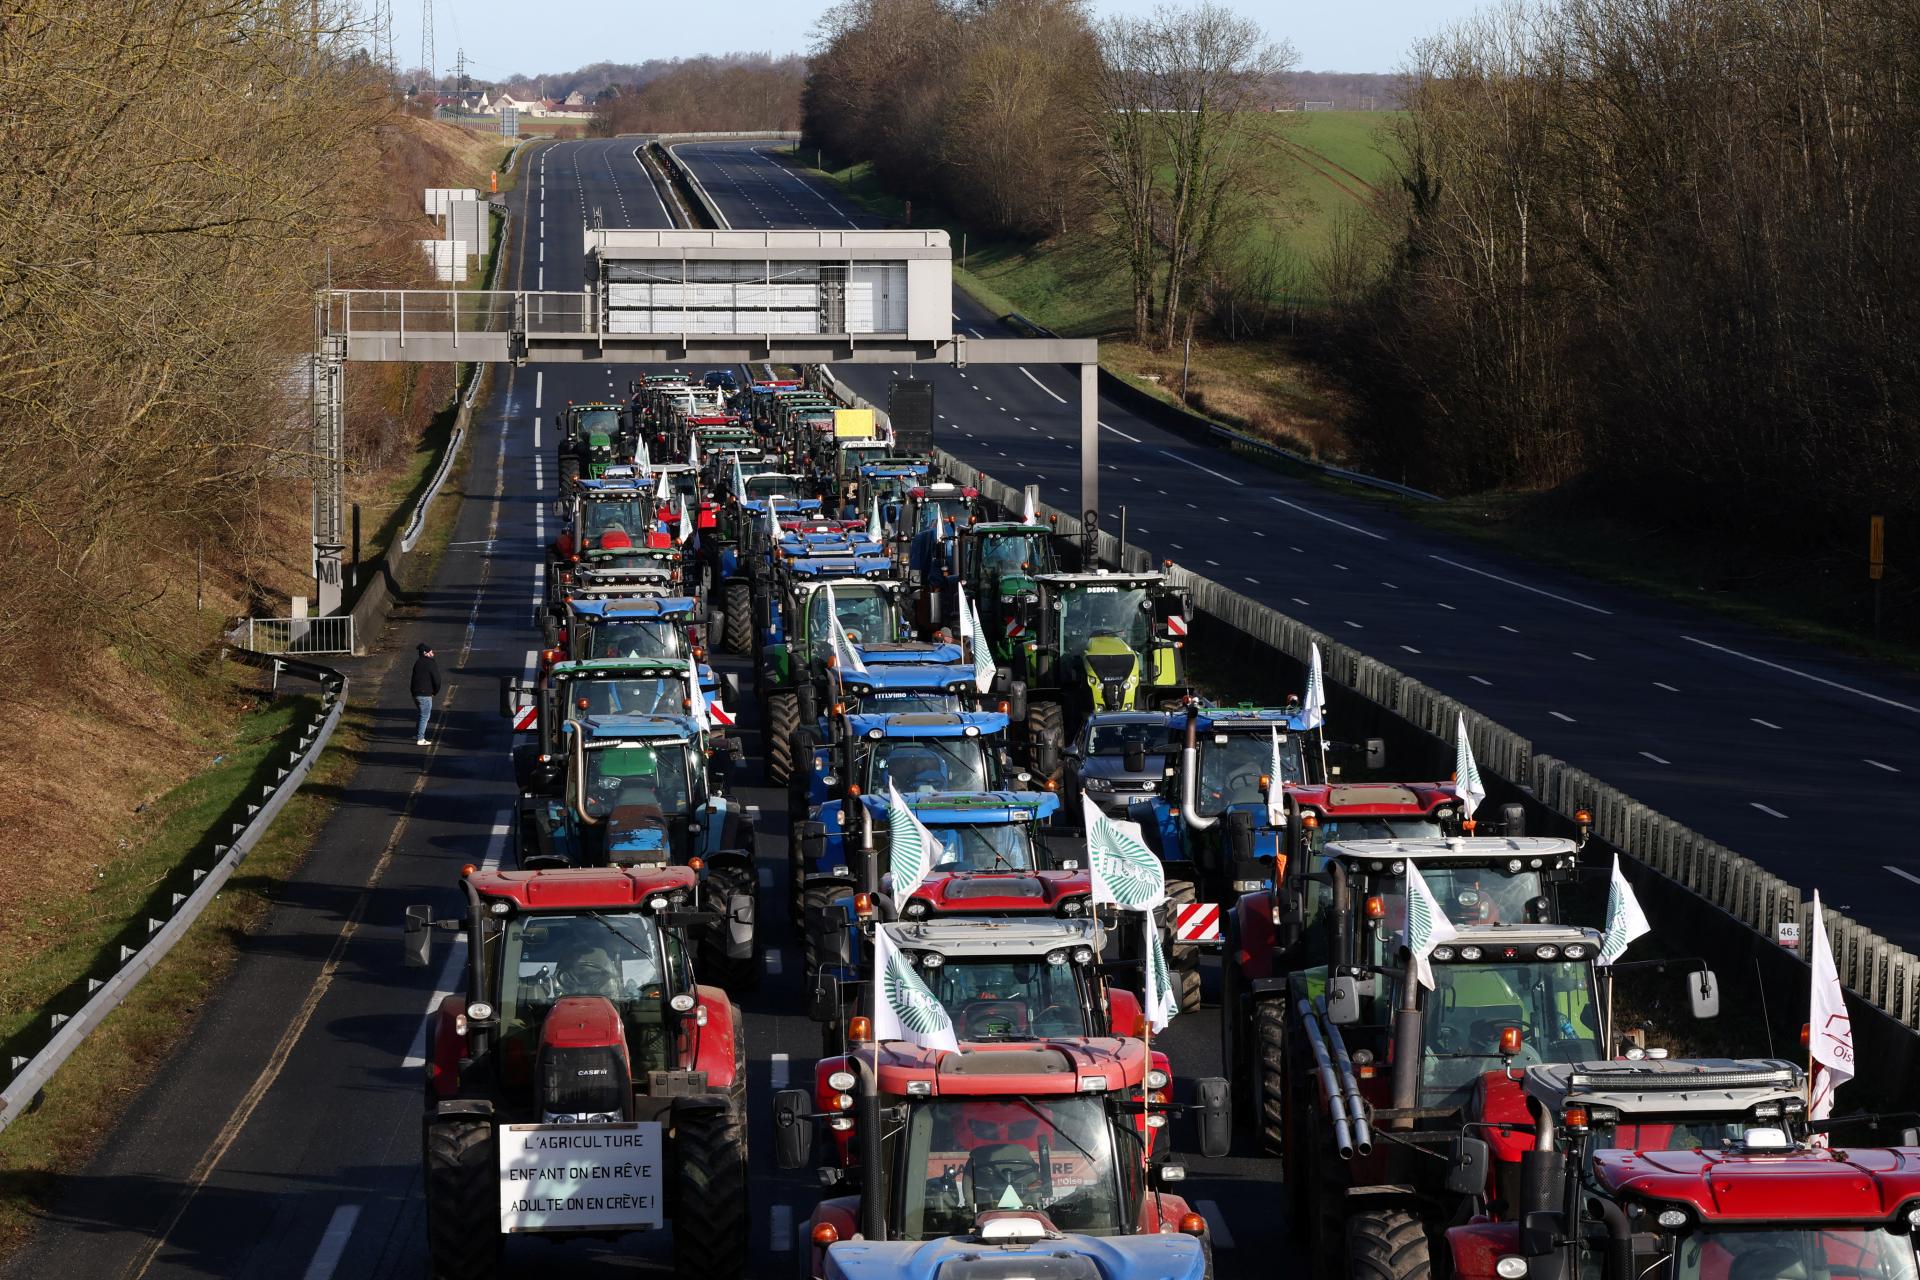 Francúzski poľnohospodári blokujú cesty v okolí Paríža kvôli nízkym cenám potravín, vládu vinia z nečinnosti